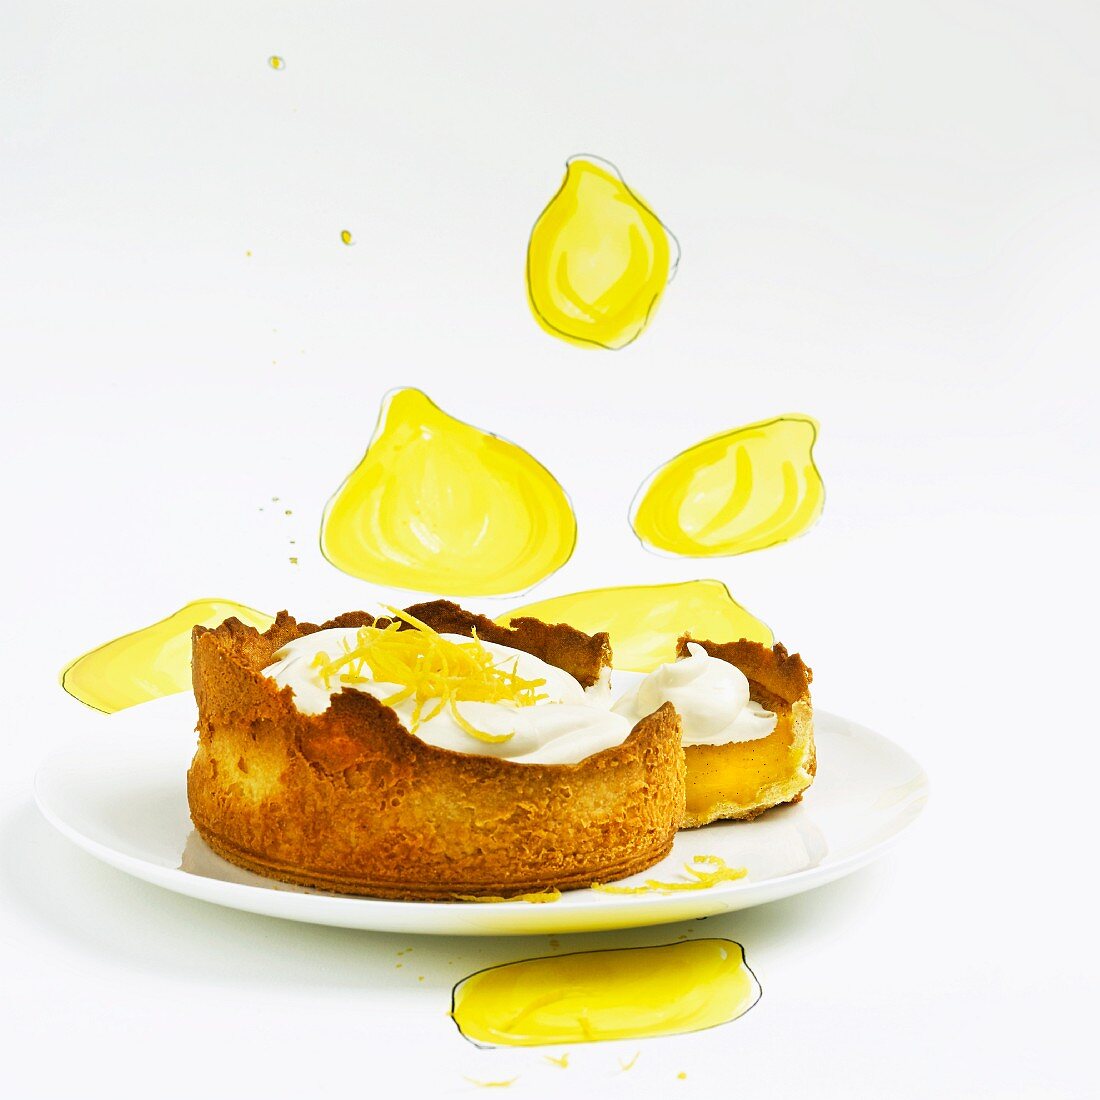 Lemon tart with whipped cream